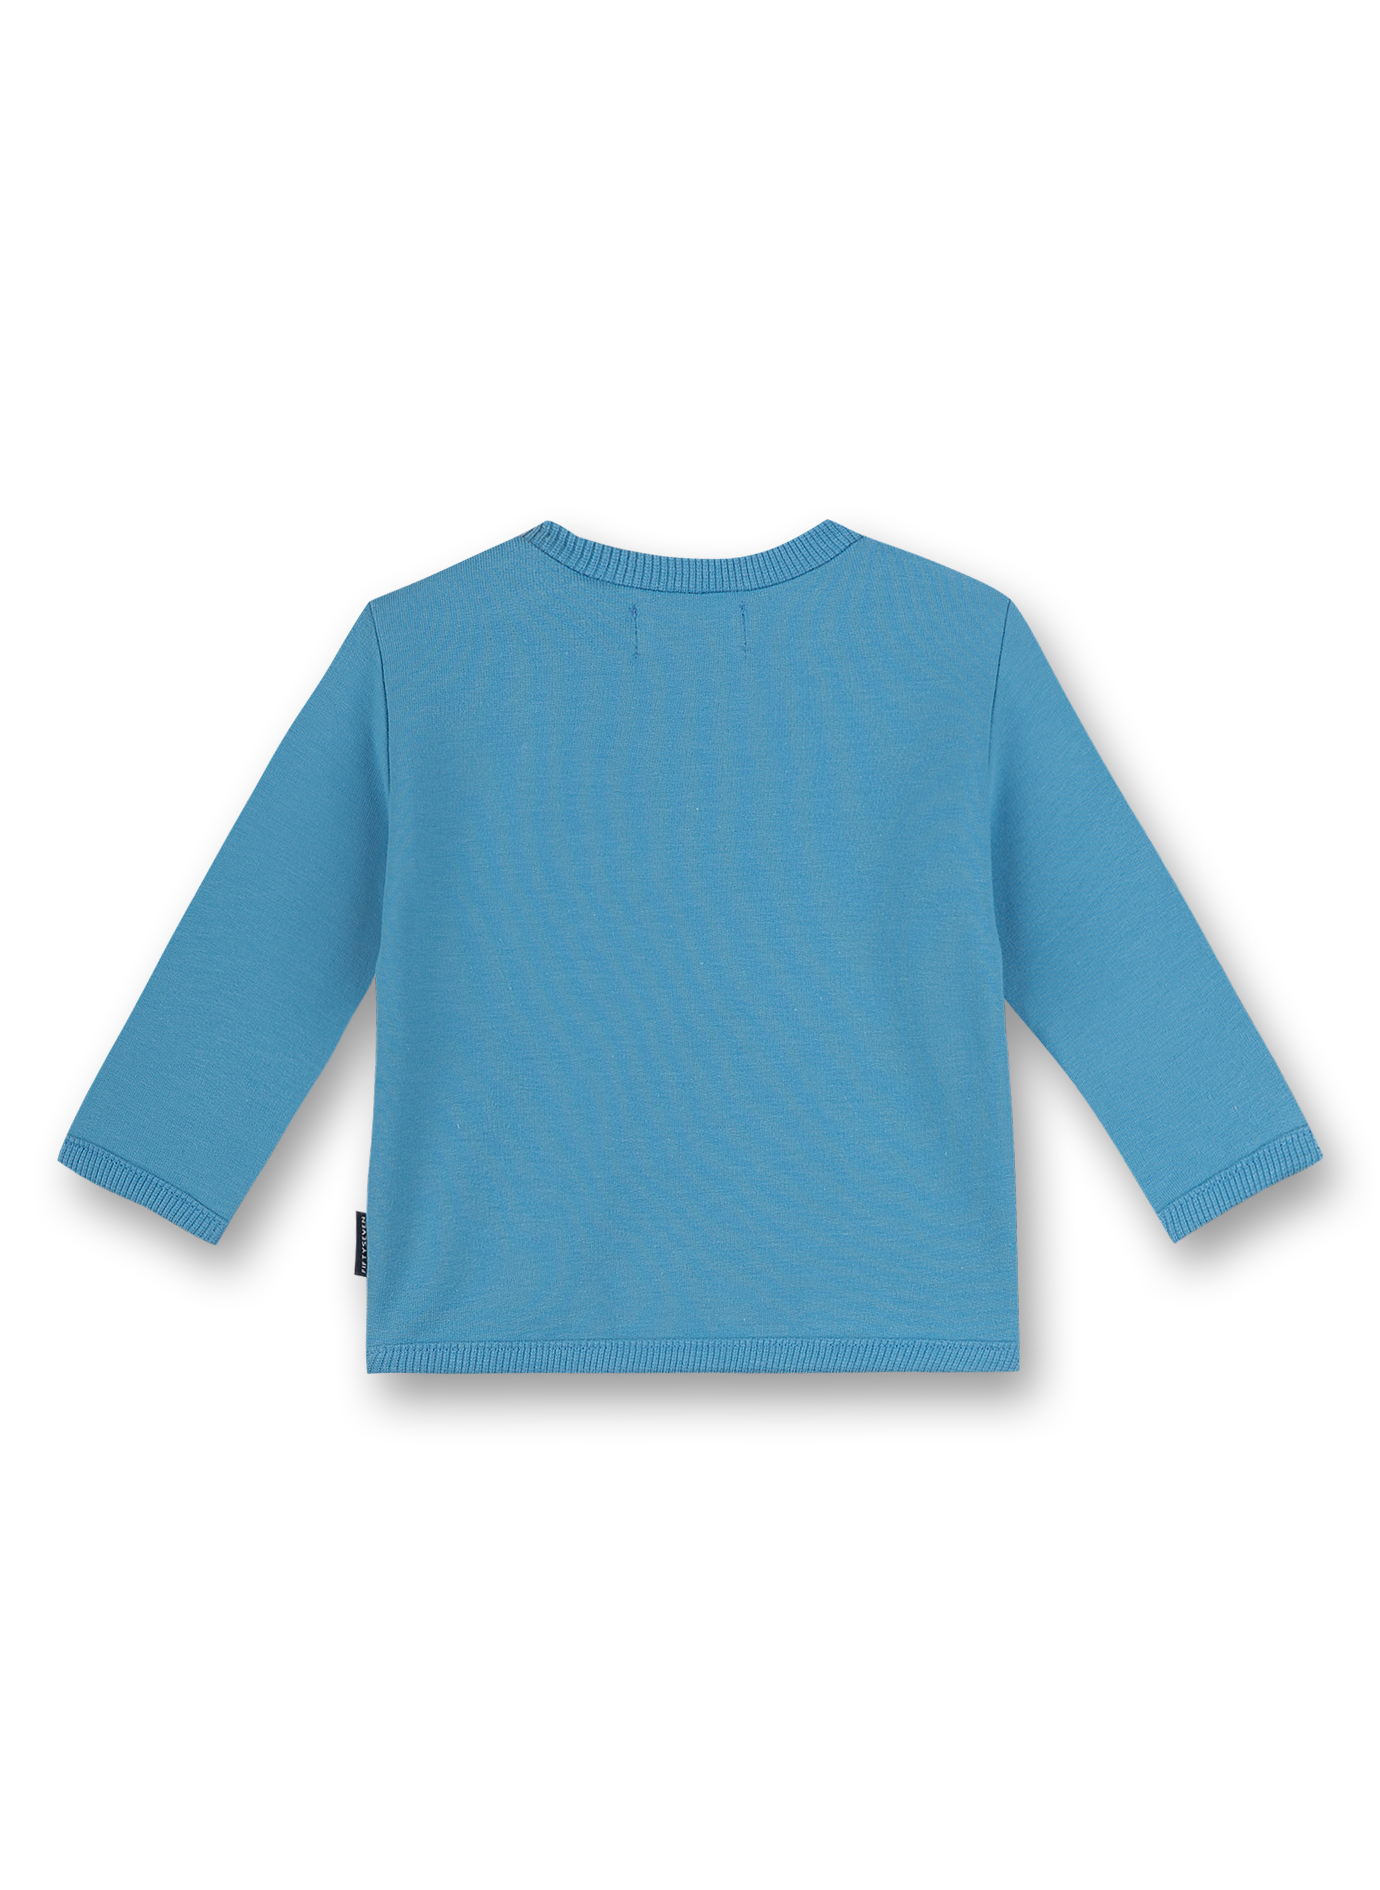 Jungen-Sweatshirt Hellblau Little Whale